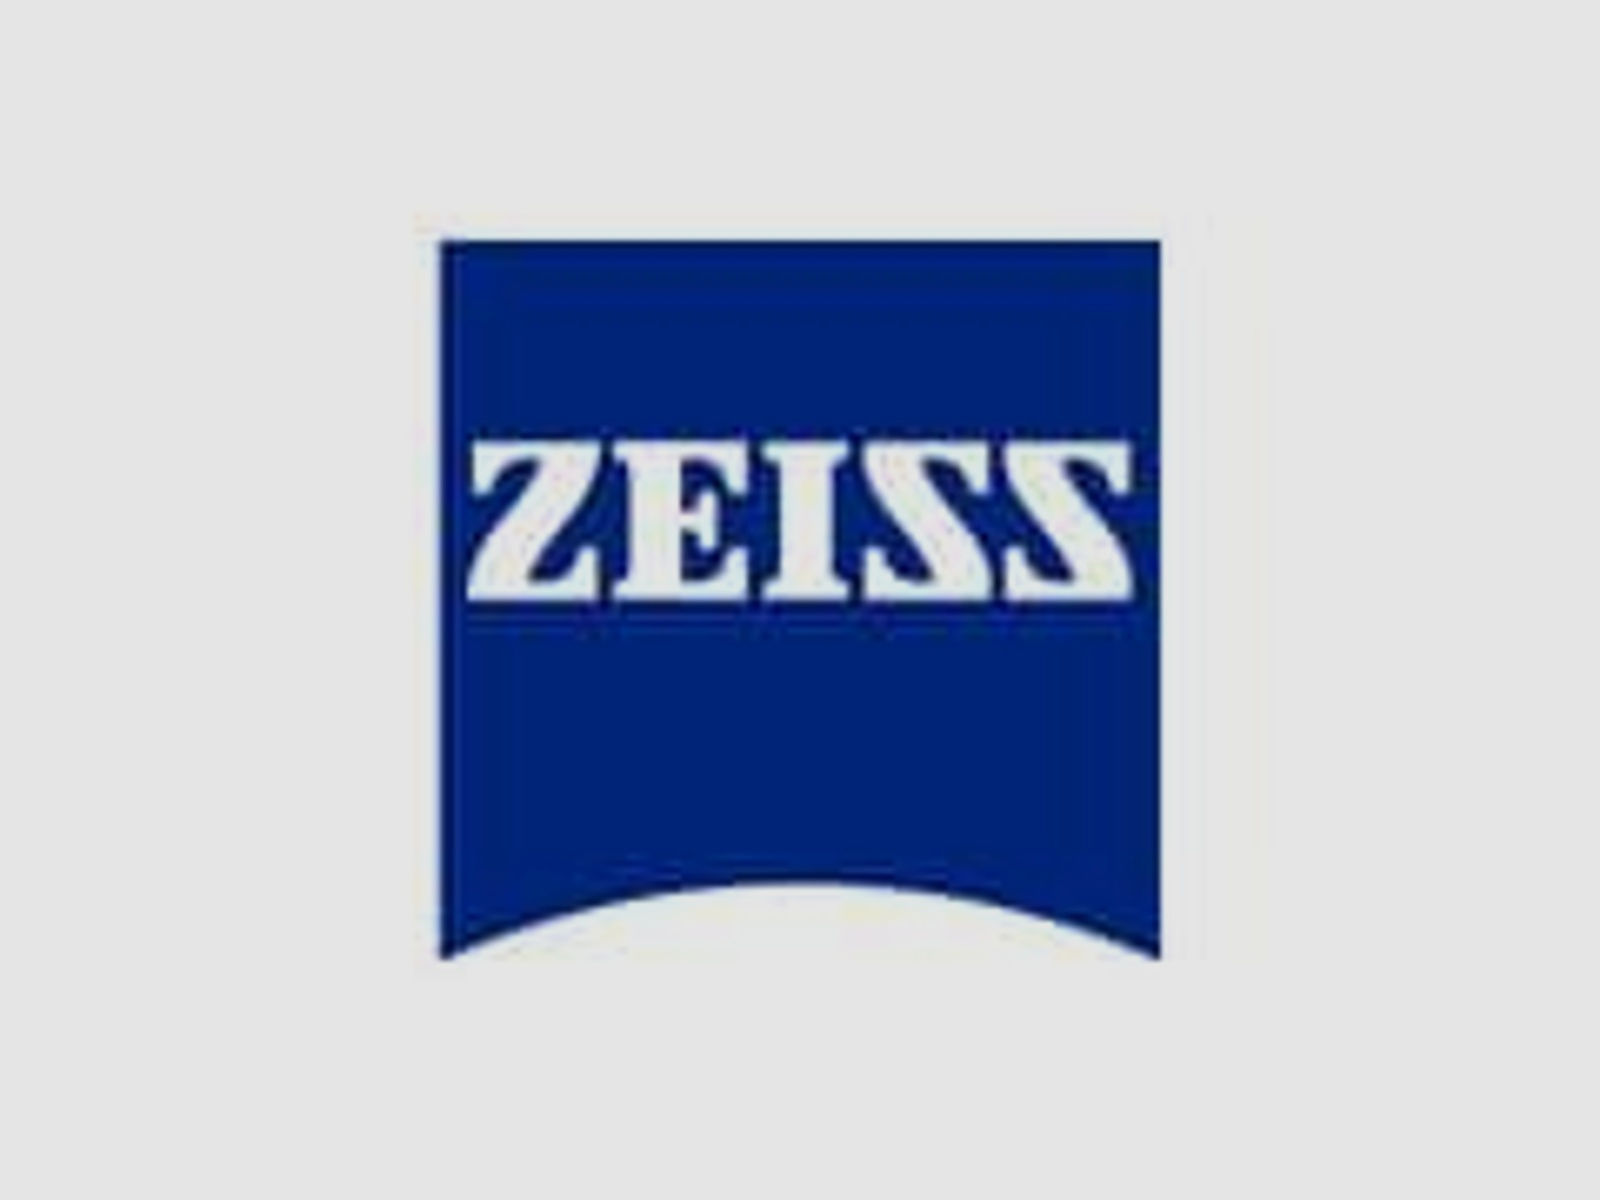 ZEISS Zubehör für Zielfernrohre Okular-Gummischutz 522100-8016 f. Victory V8